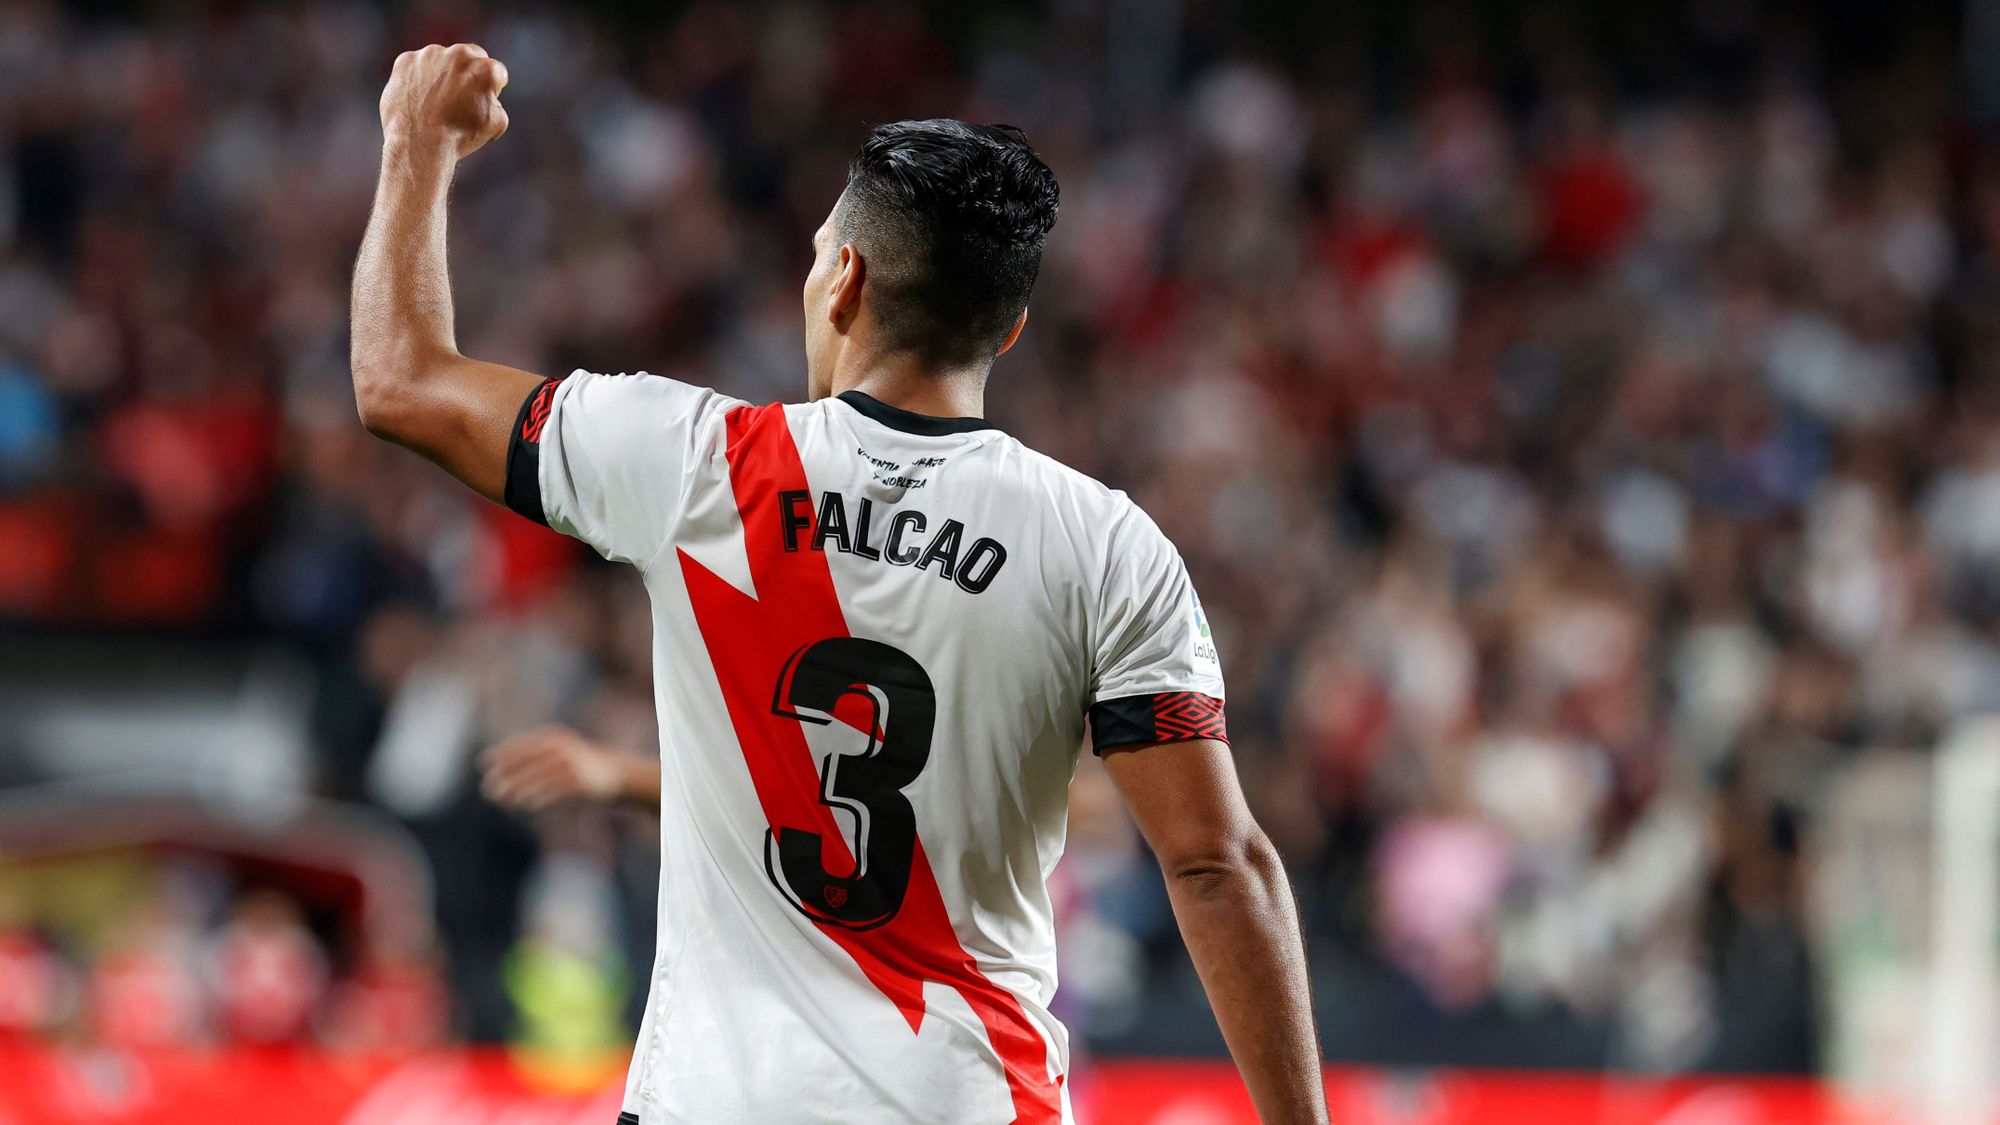 Radamel Falcao urga en la herida de Barcelona que no levanta cabeza en La Liga